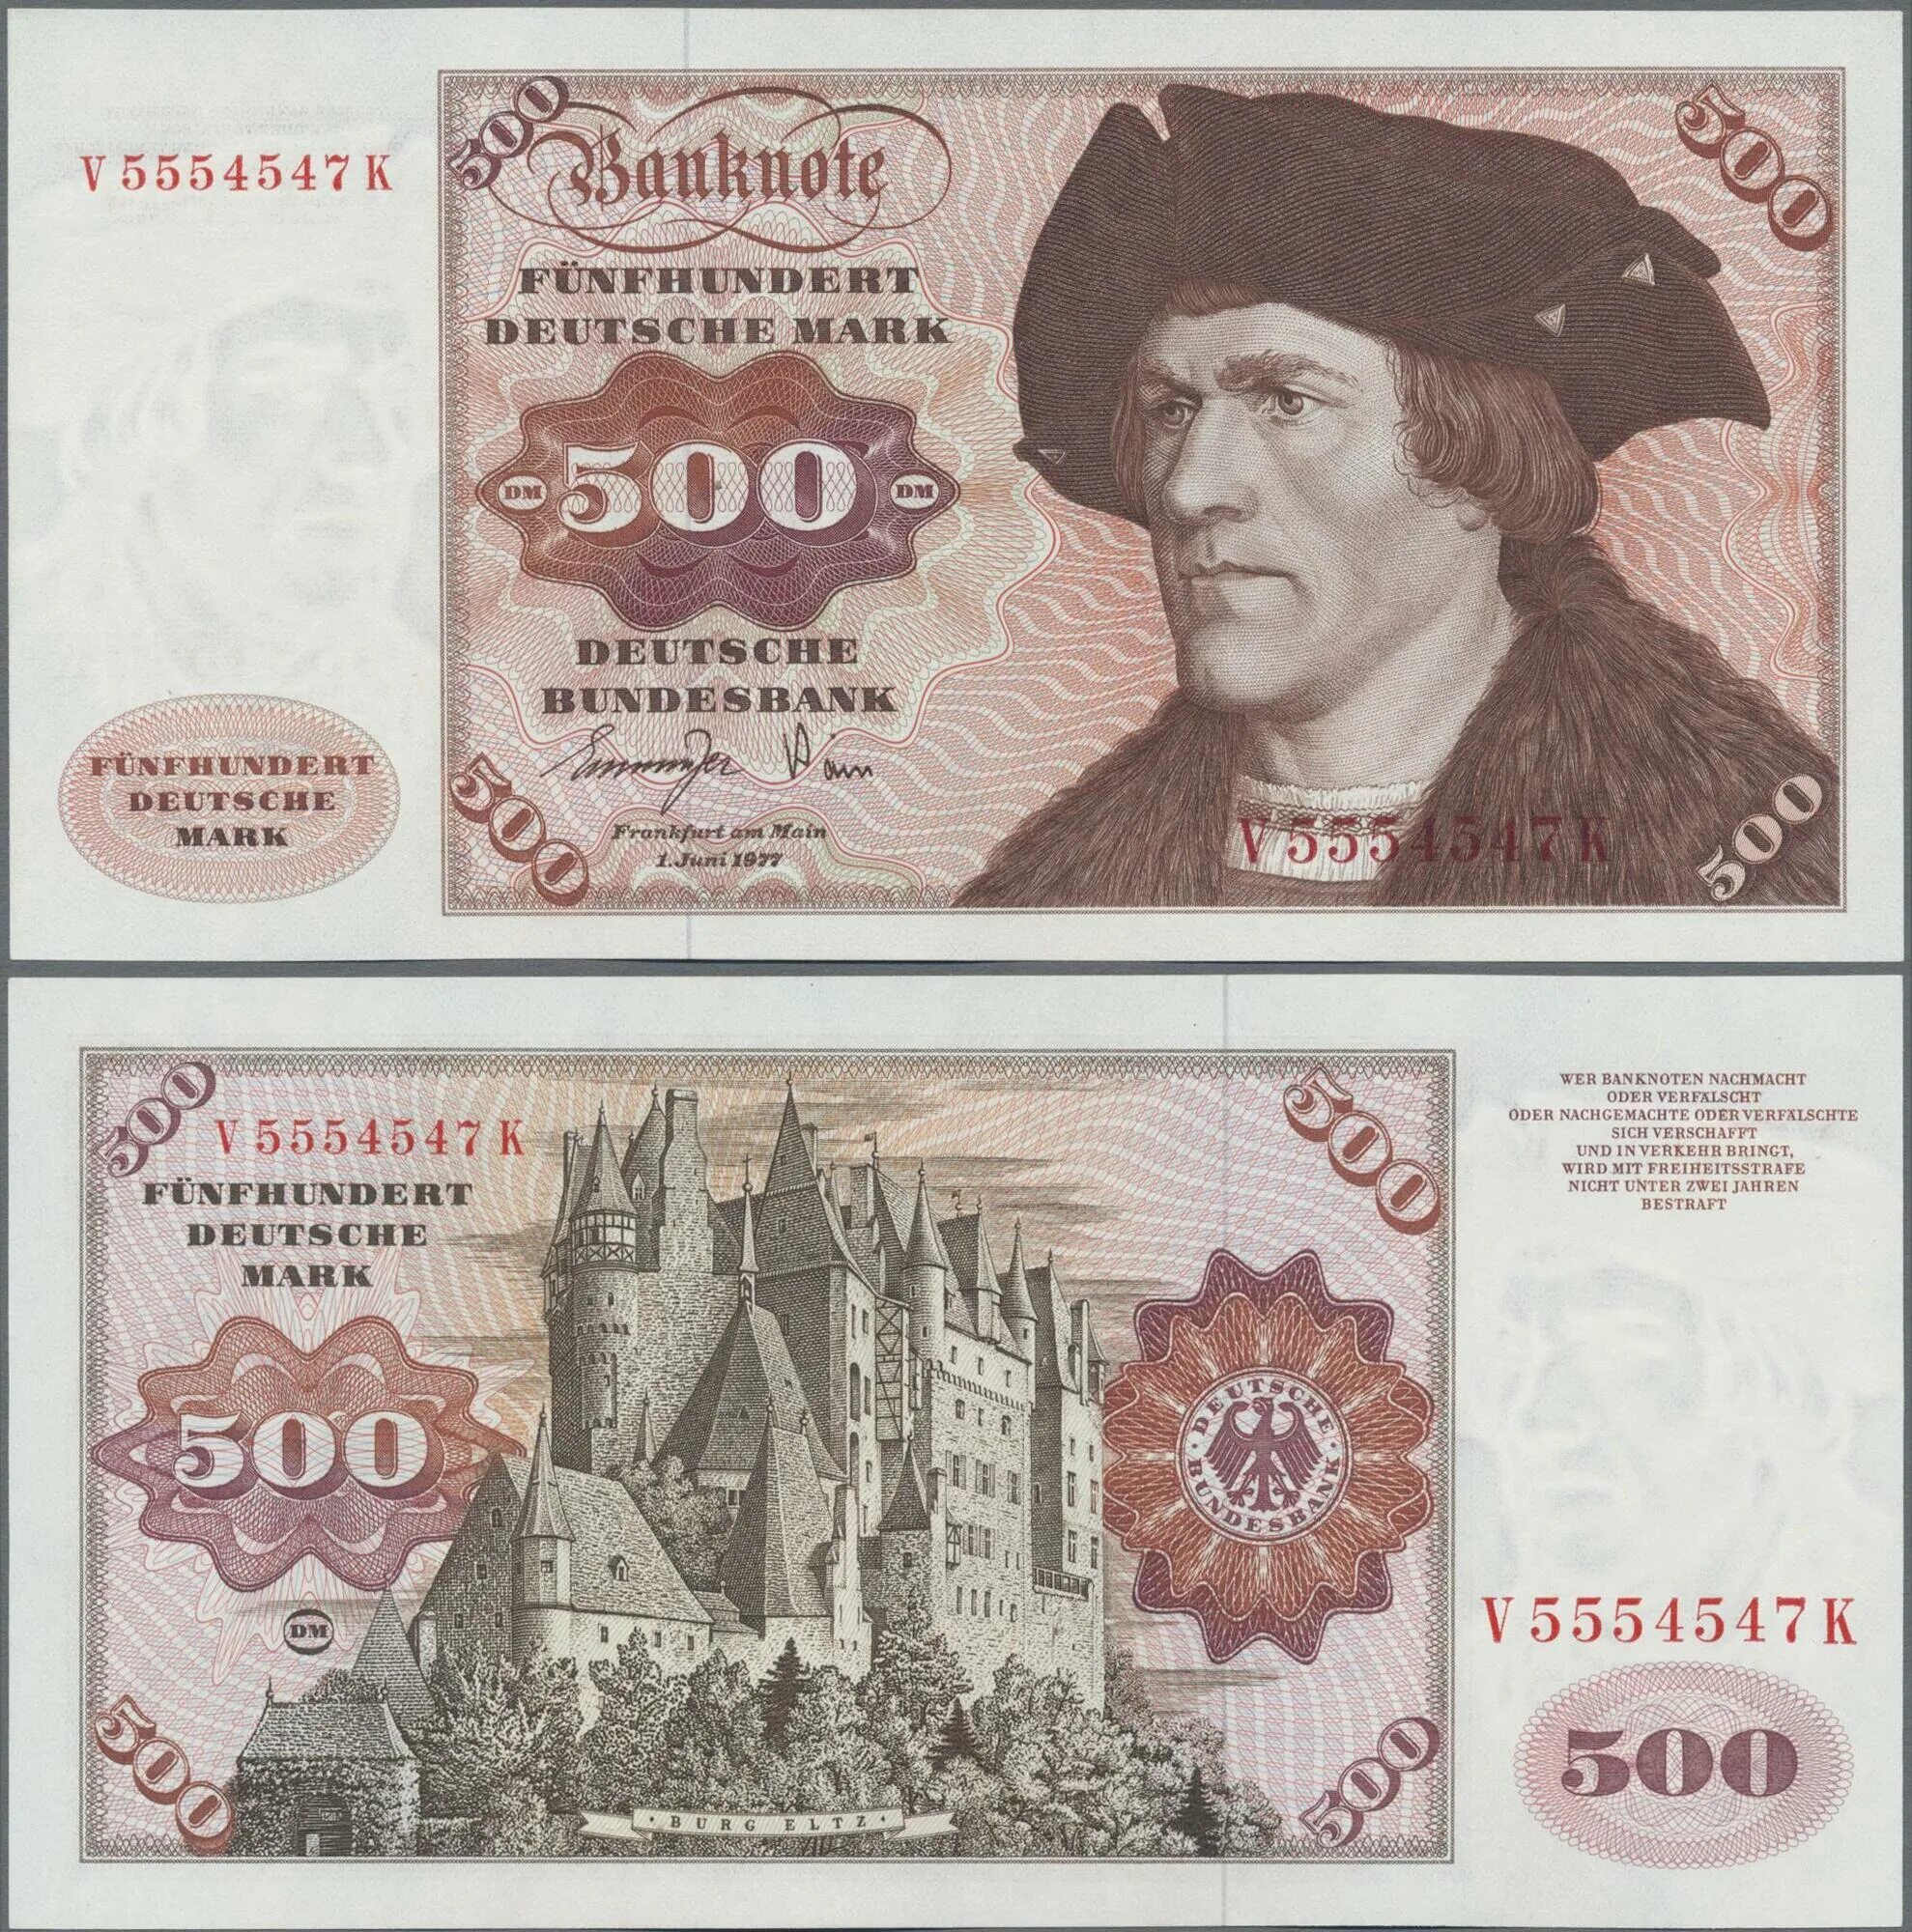 1000 Дойч марок купюра. 500 Марок ФРГ. Марки ФРГ банкноты. 500 Дойч марок банкноты.